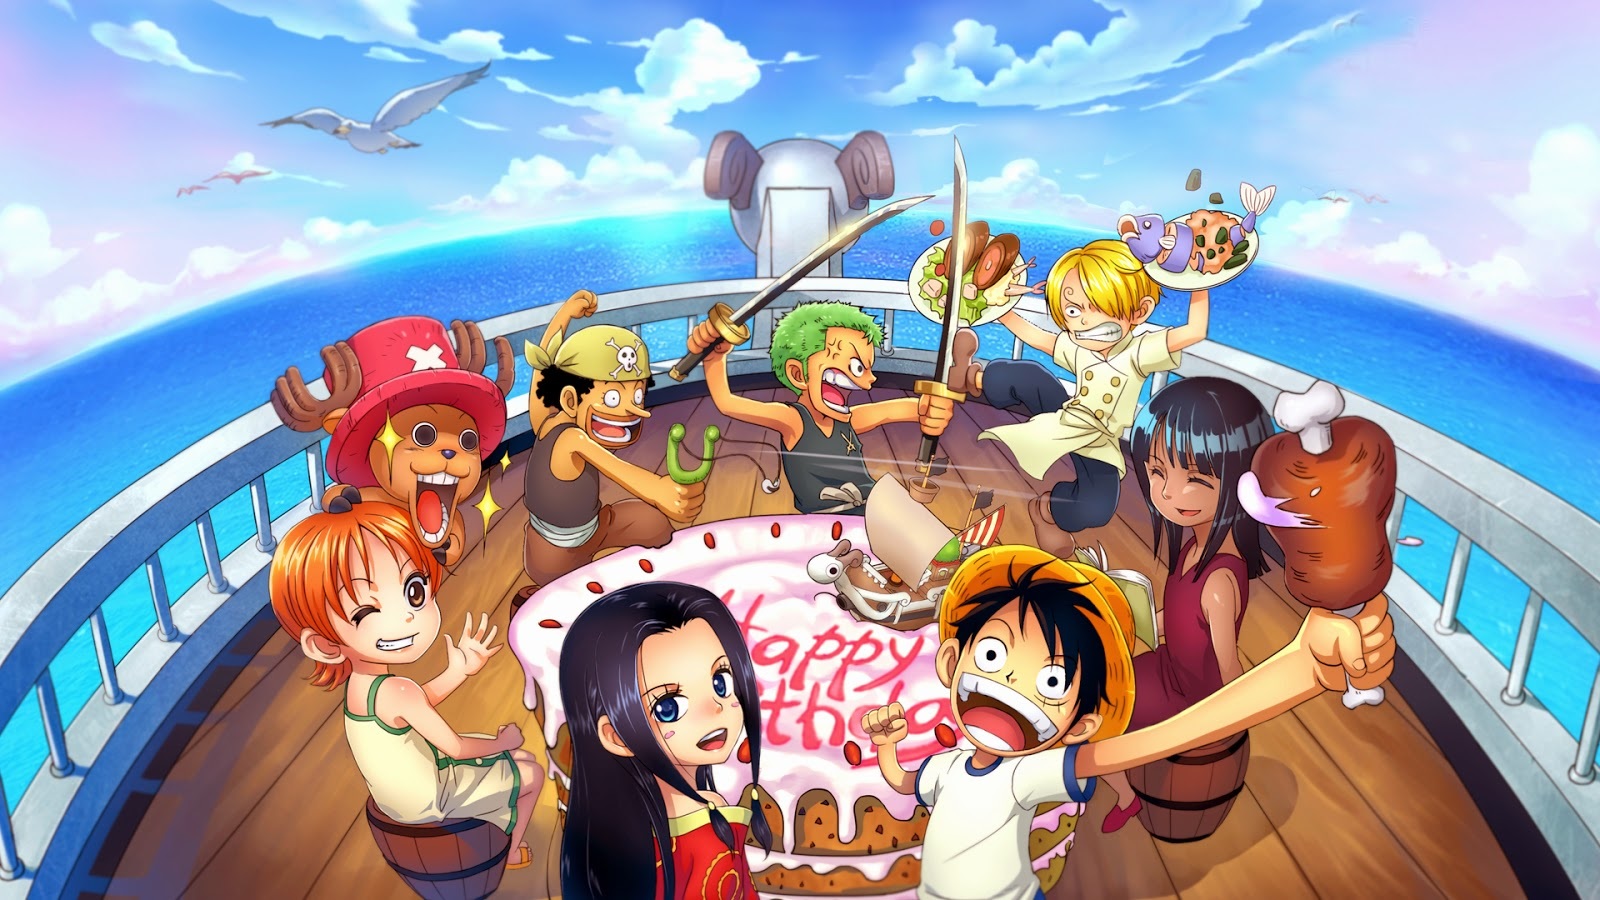 Ảnh Anime One Piece: Hãy khám phá bộ sưu tập ảnh anime One Piece độc đáo và mang tính nghệ thuật cao trên trang web của chúng tôi. Những hình ảnh đầy màu sắc, tinh tế và đầy chất lượng sẽ đưa bạn vào thế giới huyền bí của bộ truyện tranh và anime/manga nổi tiếng nhất với hàng triệu fan trên toàn thế giới.